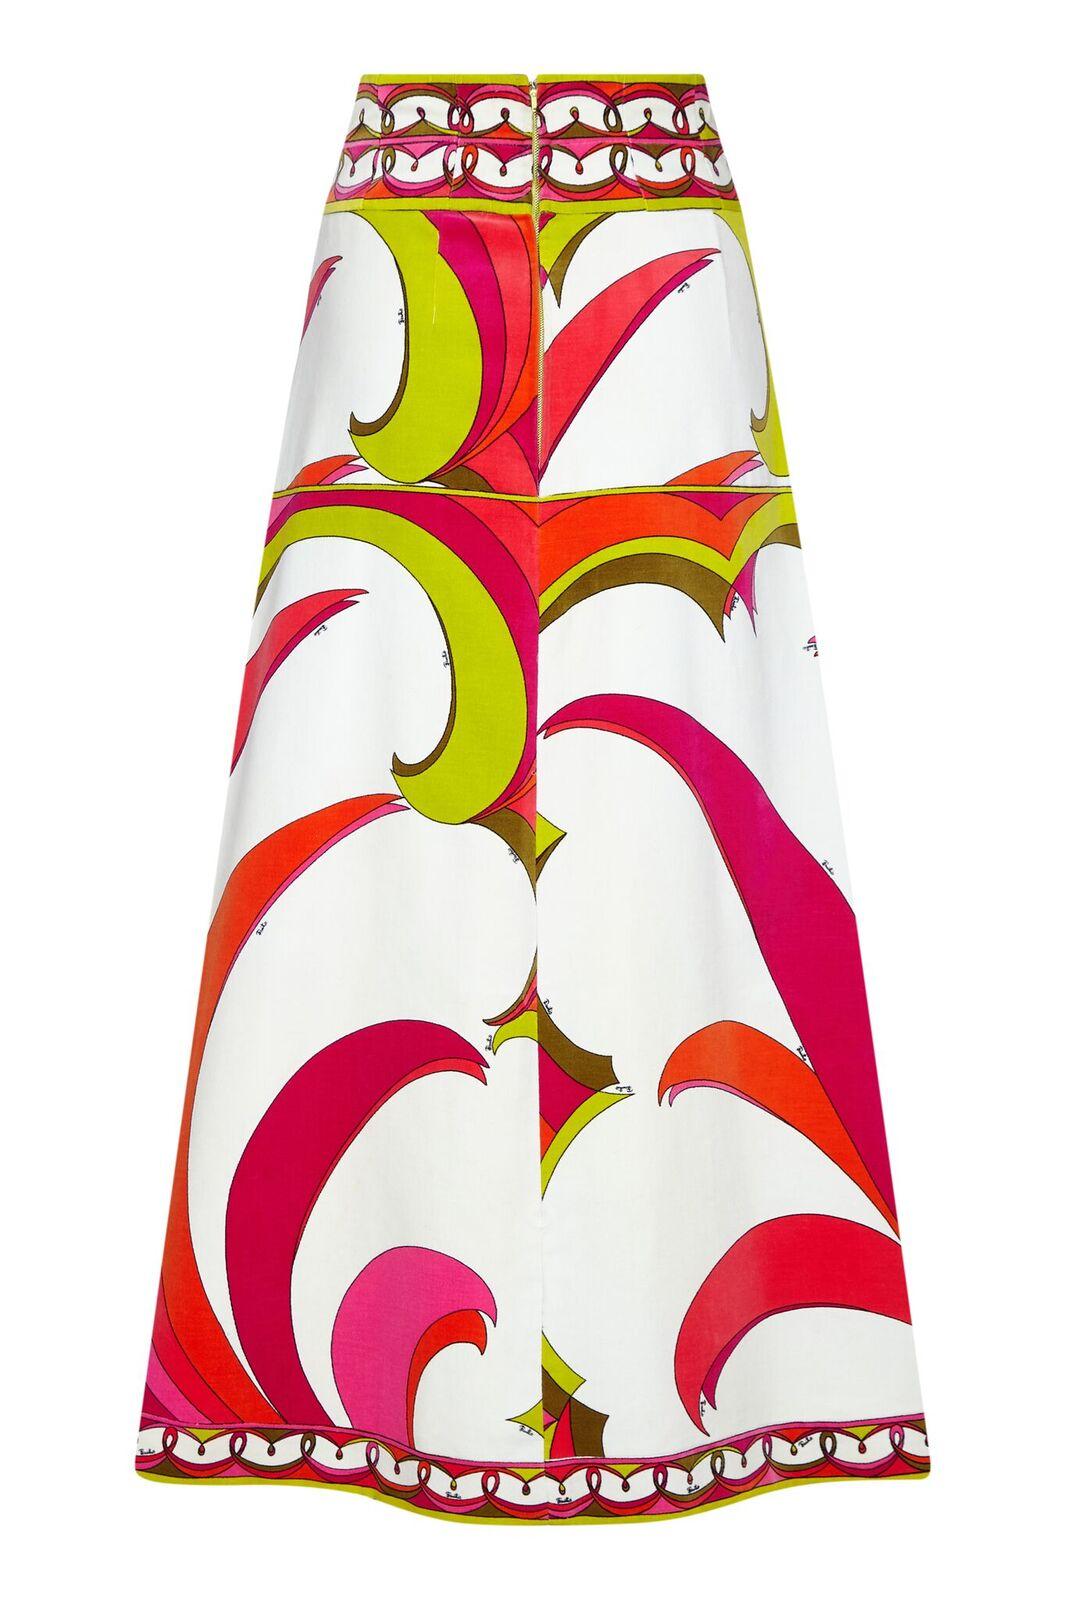 Cette superbe jupe longue en velours de Pucci datant des années 1970 est dans un état vintage impeccable et présente un imprimé tropical vibrant et lumineux. Les couleurs vives vert lime, mandarine et fuchsia ressortent de manière impressionnante du